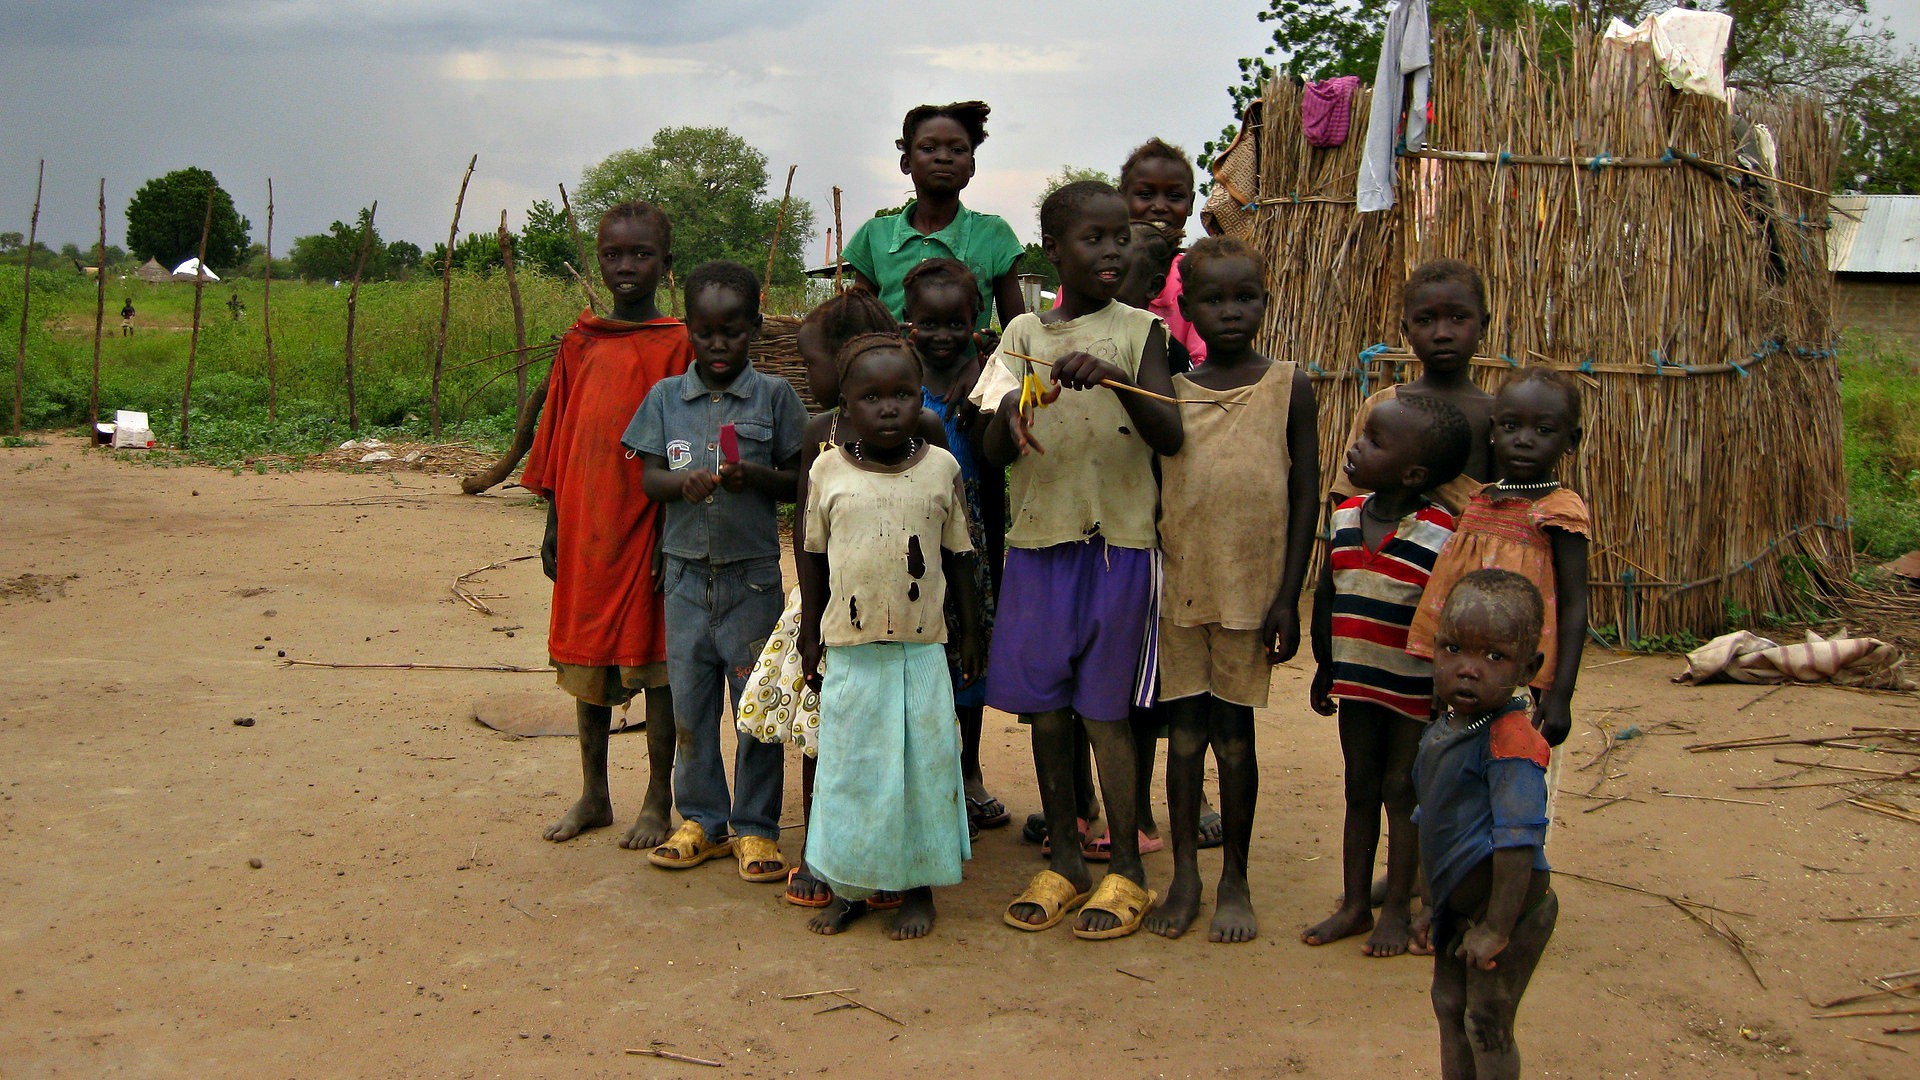 Au Soudan du Sud, le conflit menace de famine des millions de personnes (Photo d'illustration:Amy the nurse/Flickr/CC BY NC-ND 2.0)